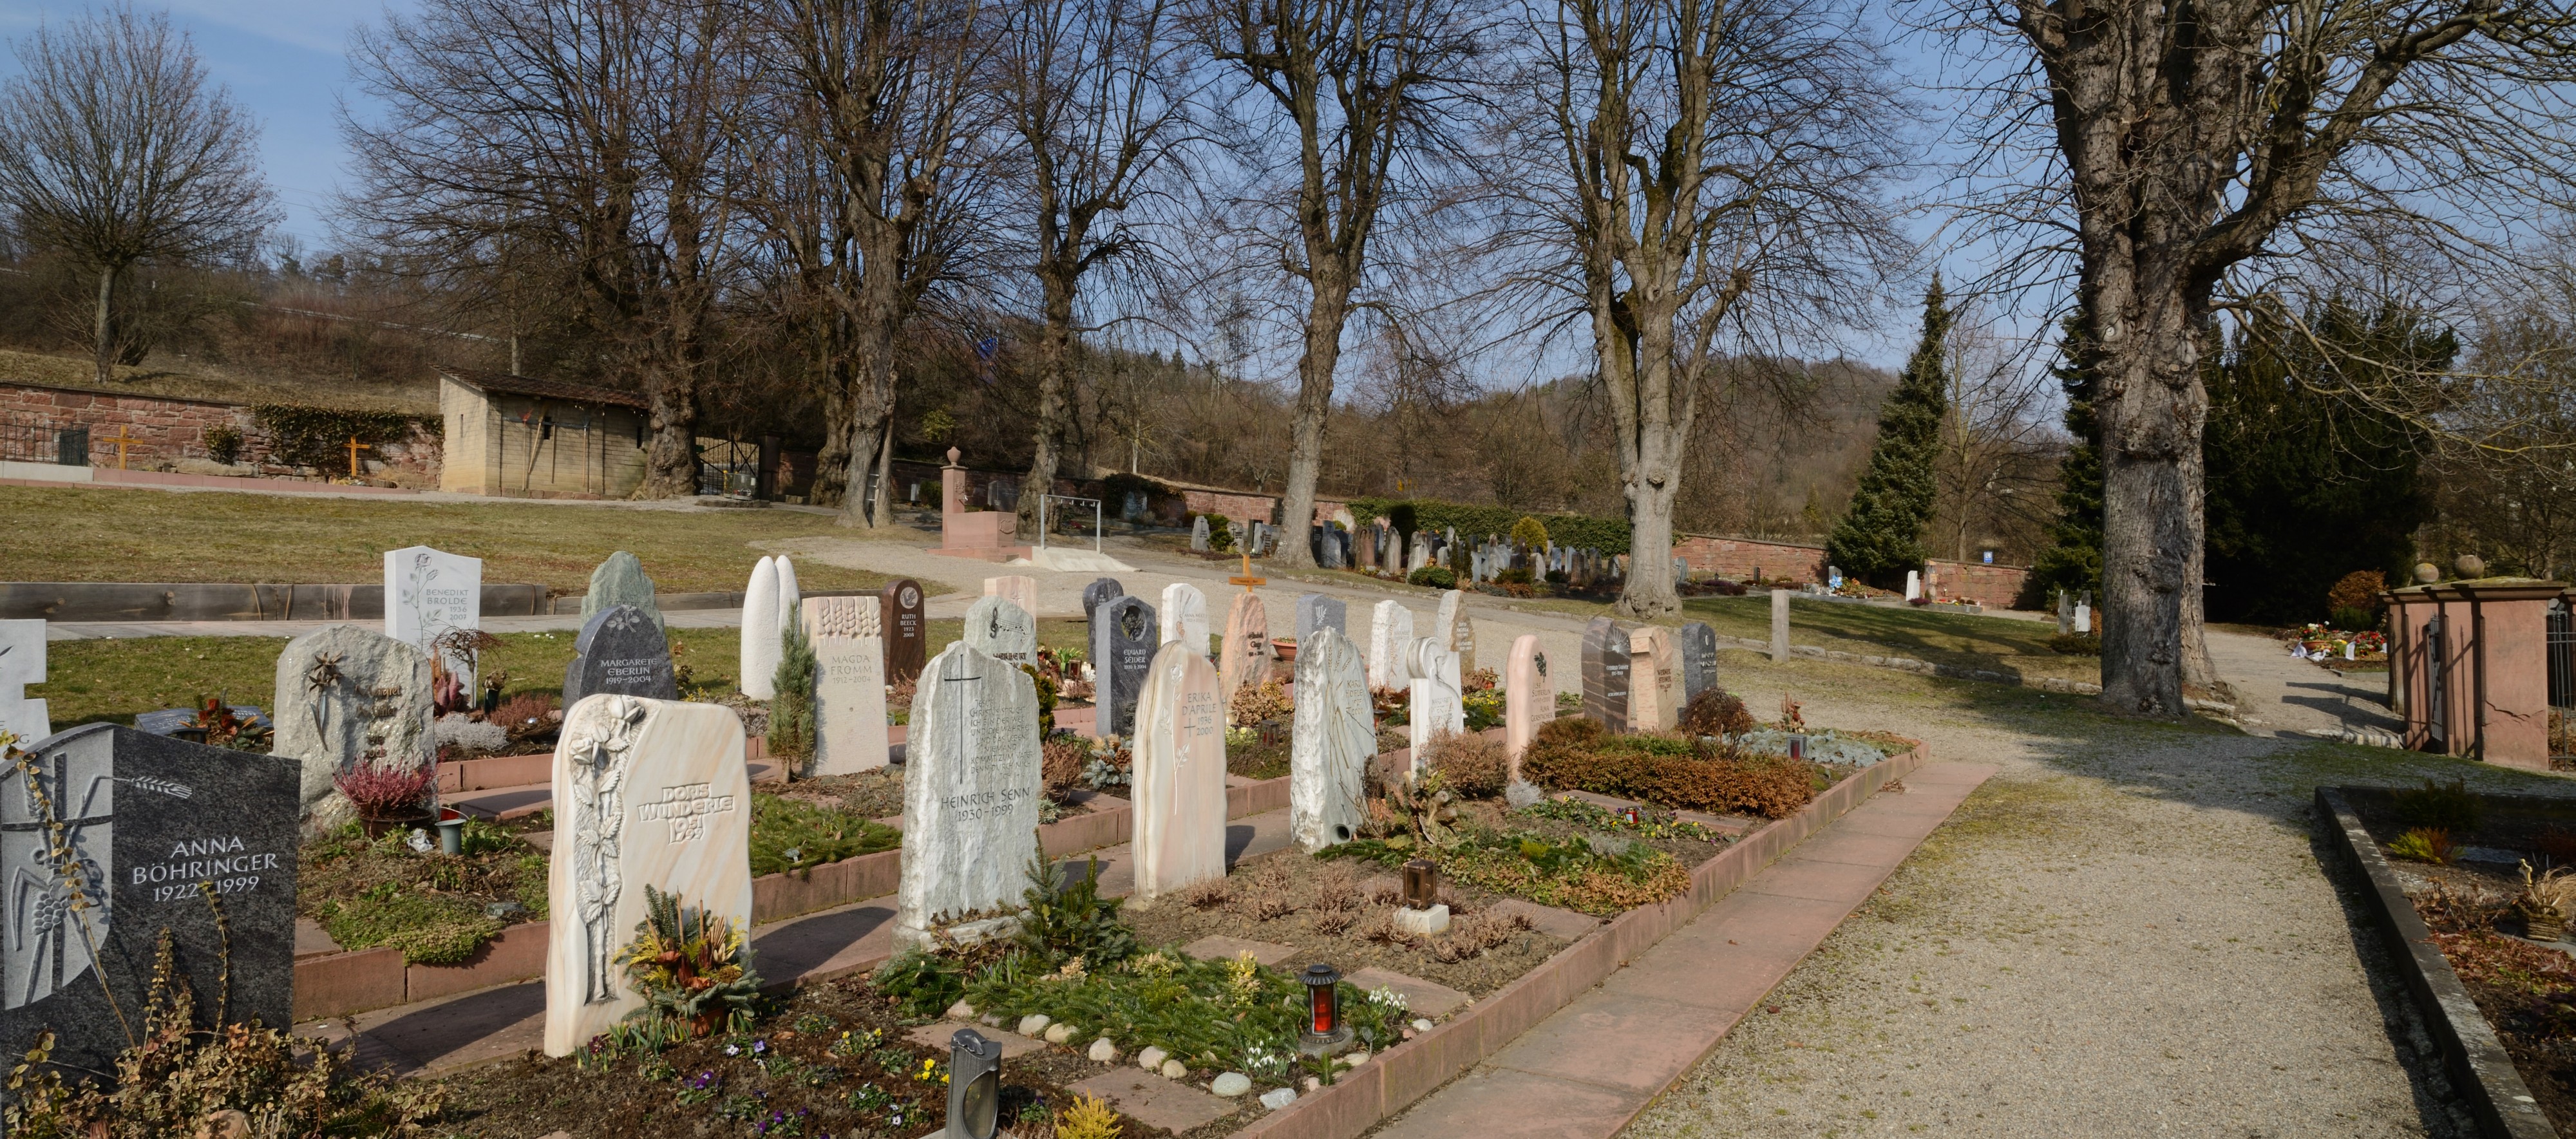 Lörrach-Tumringen - Friedhof